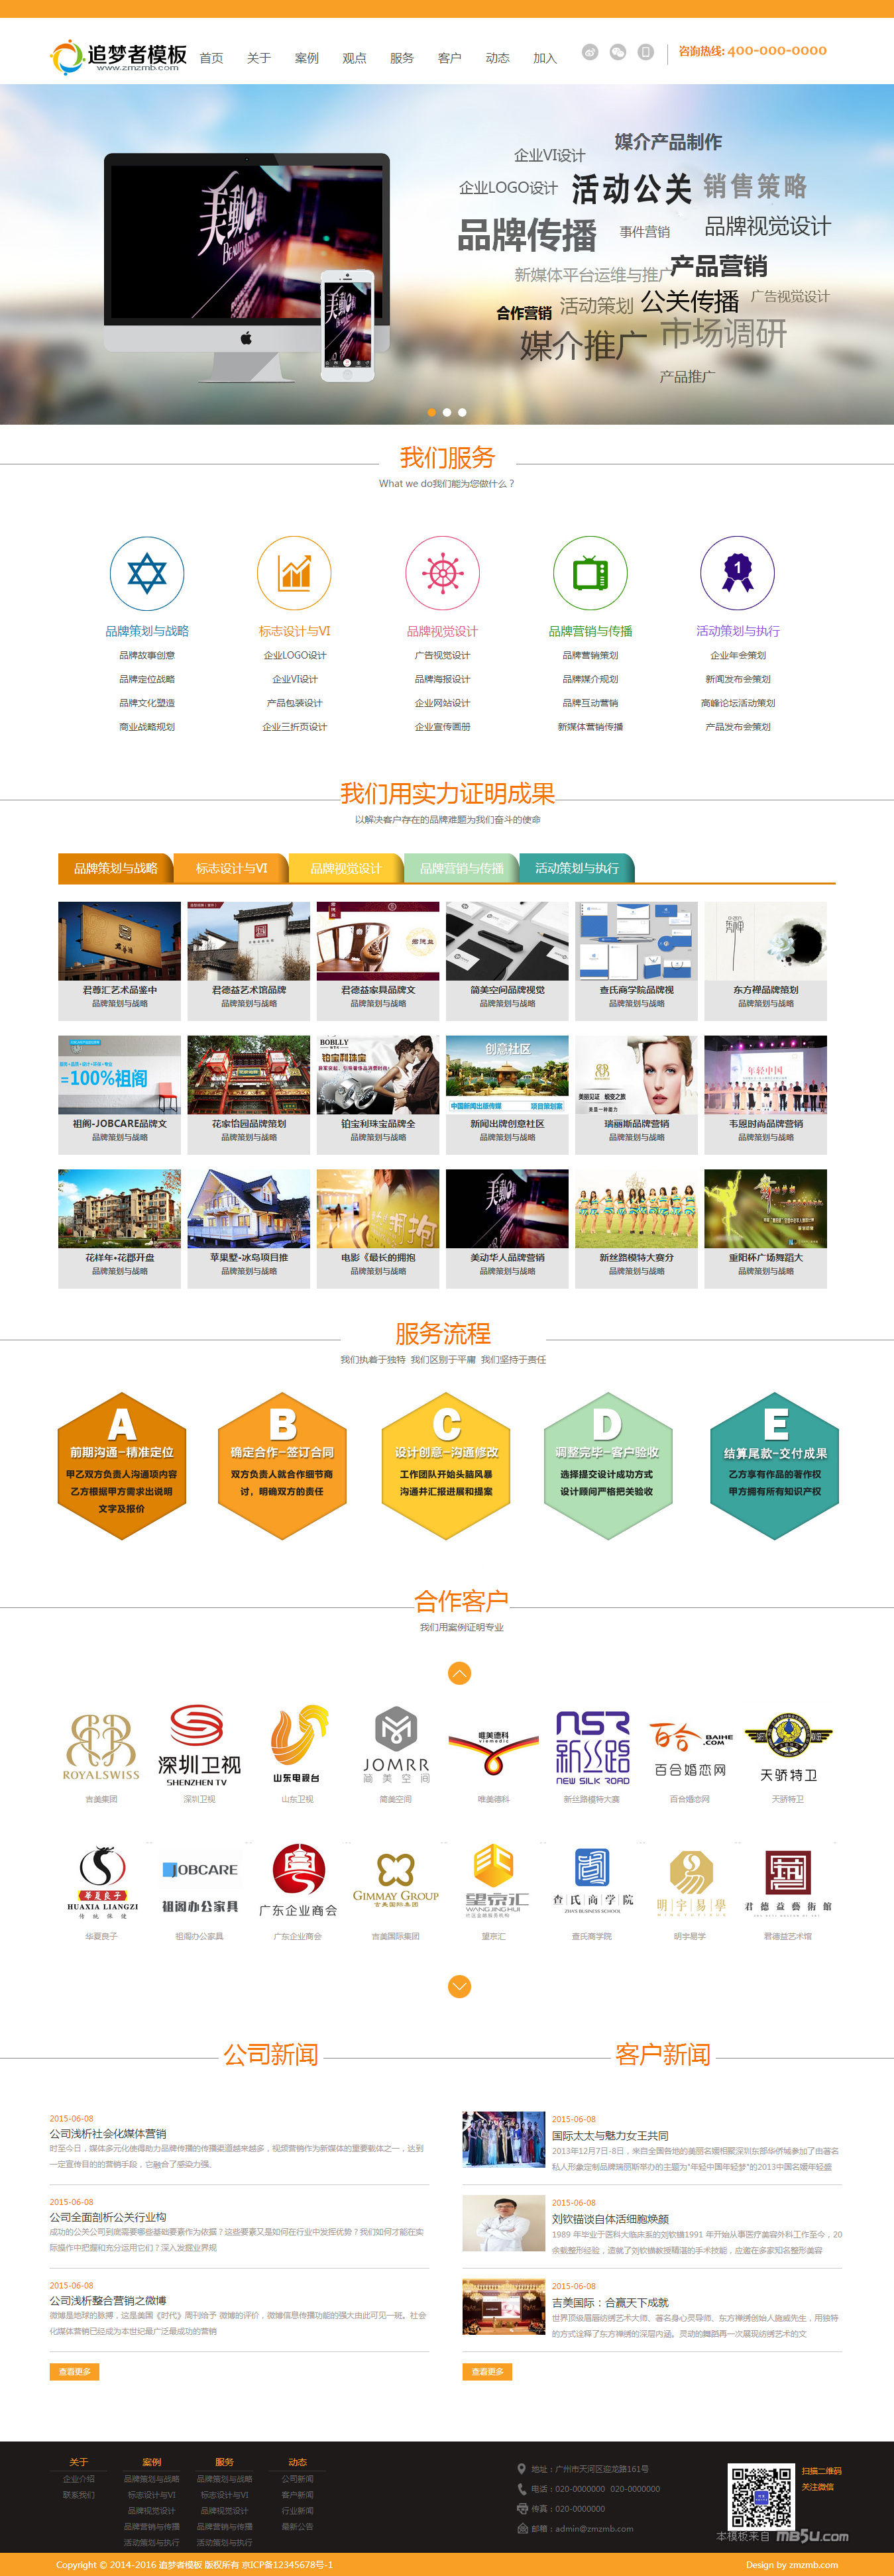 织梦文化传播公司品牌营销设计工作室网站模板